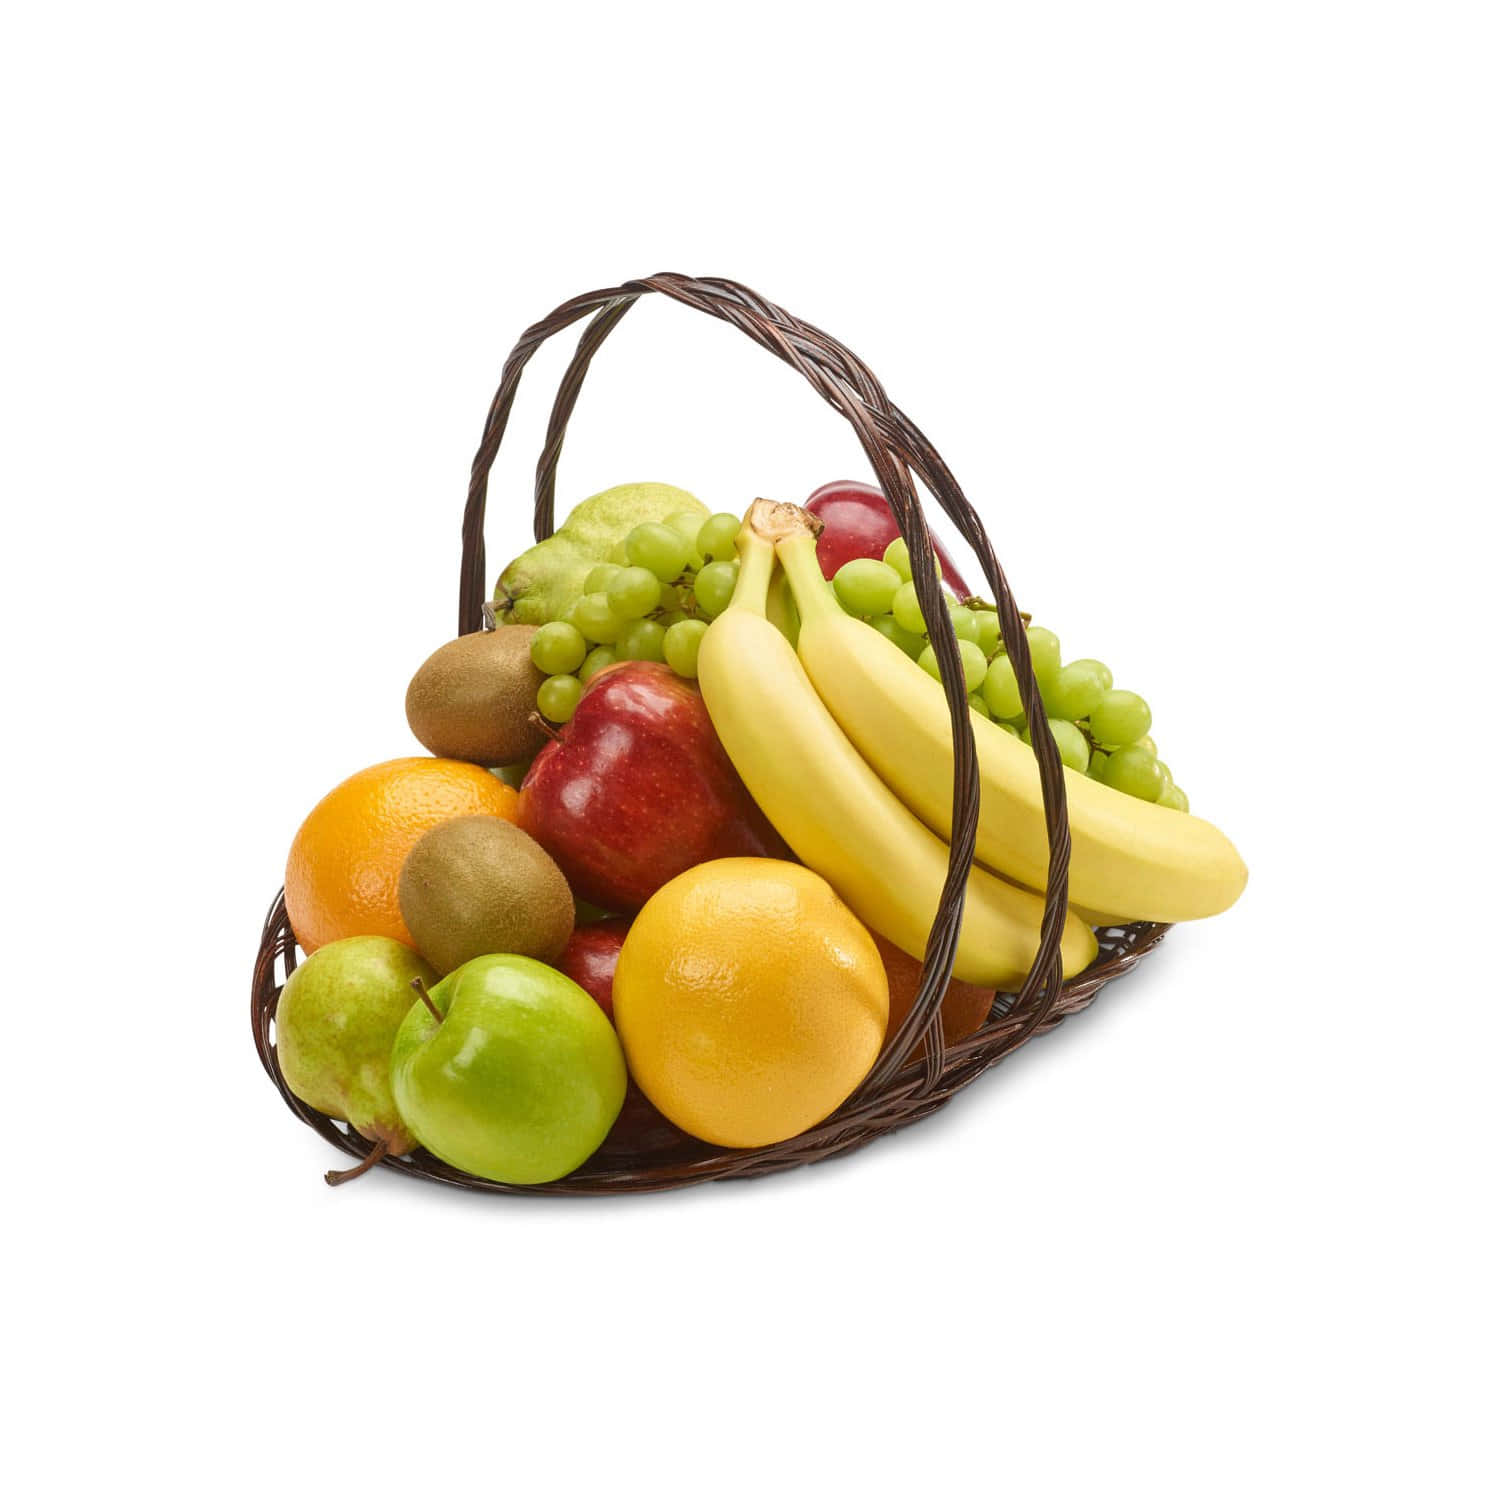 Firarvardagliga Glädjeämnen I Livet Med Fruits Basket